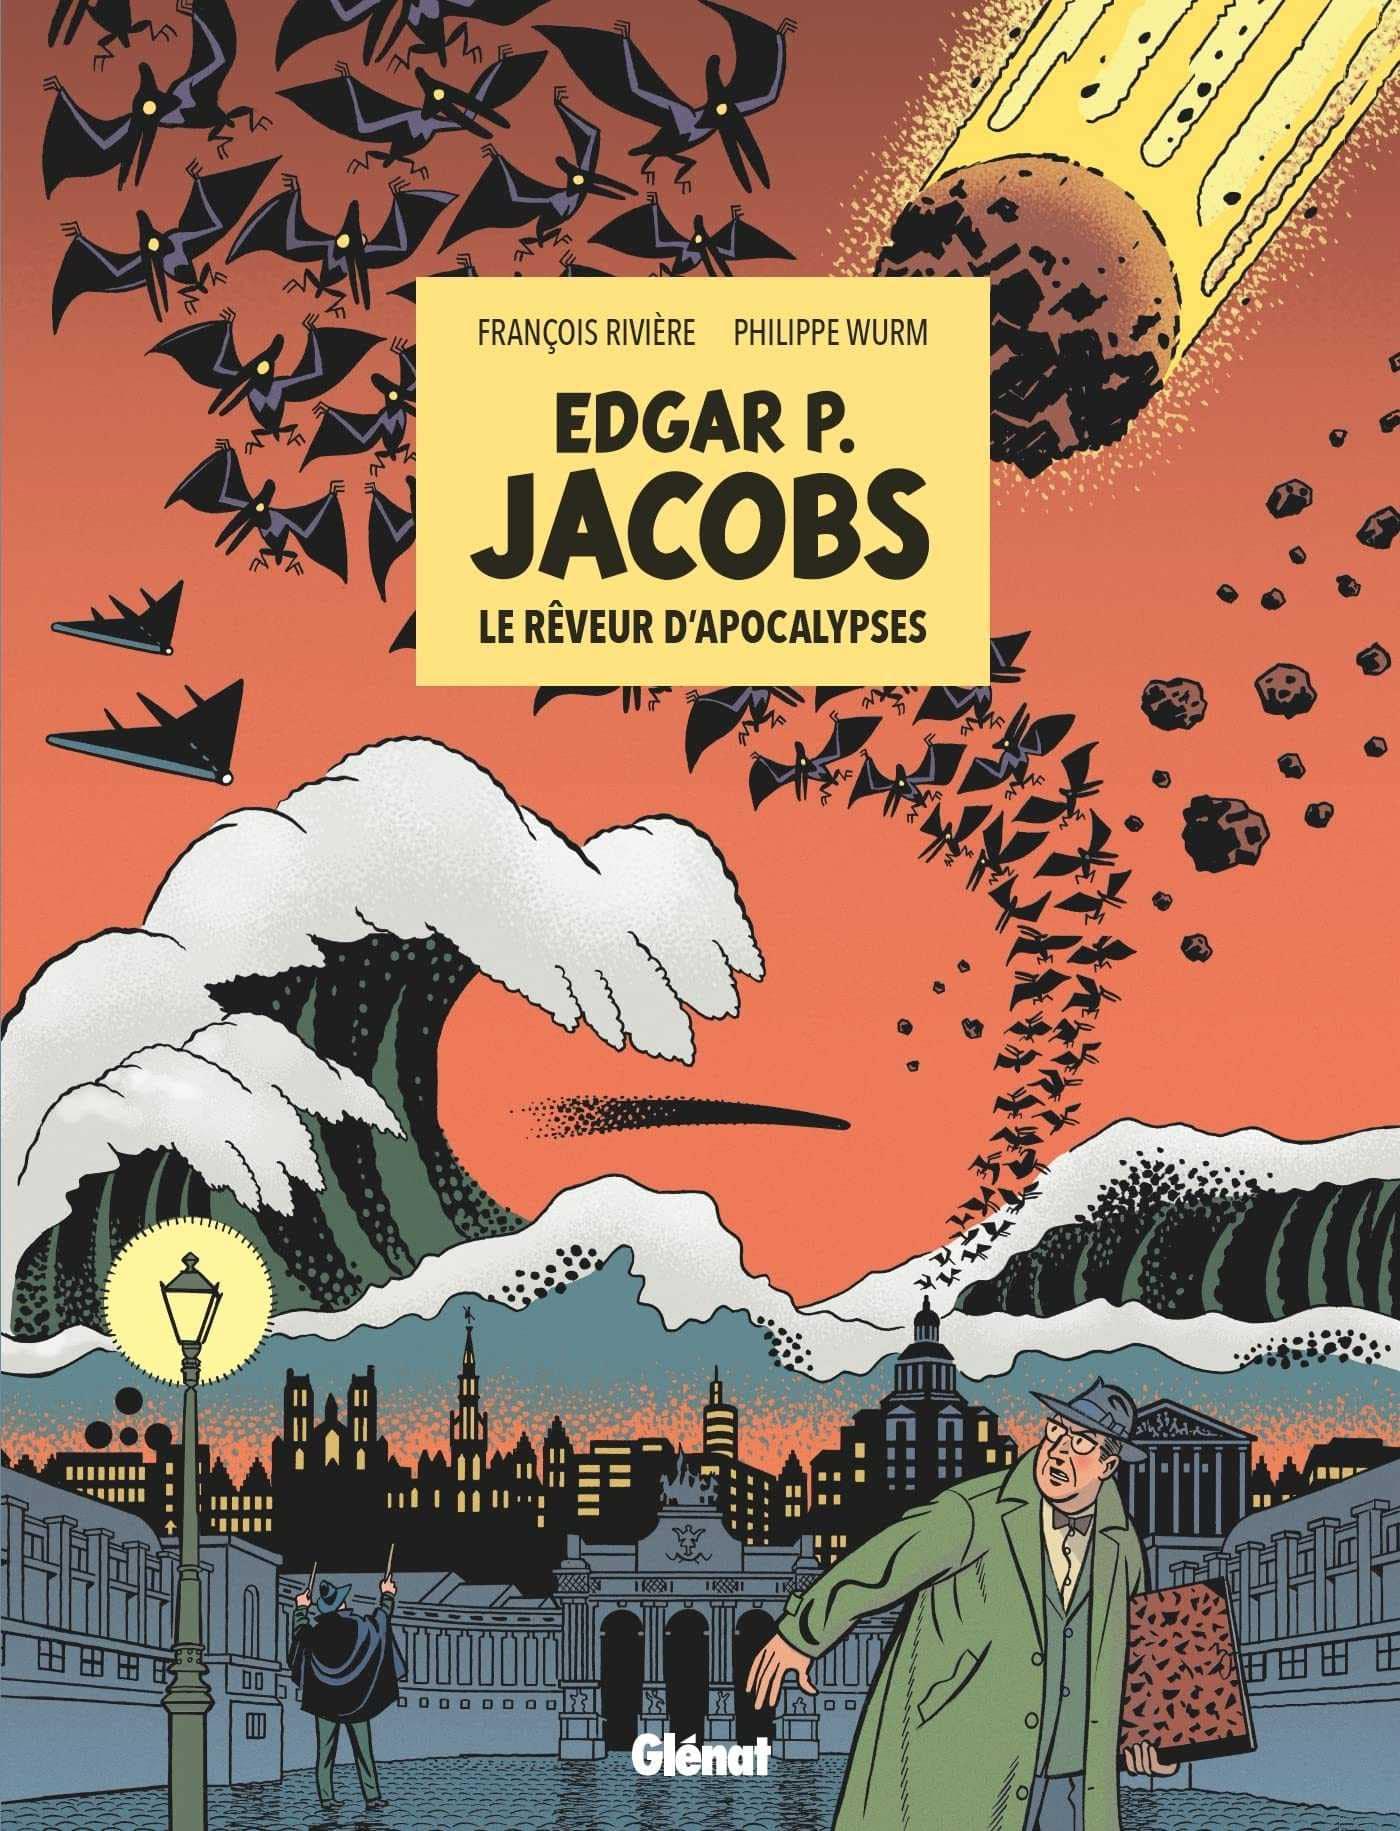 Edgar p jacobs